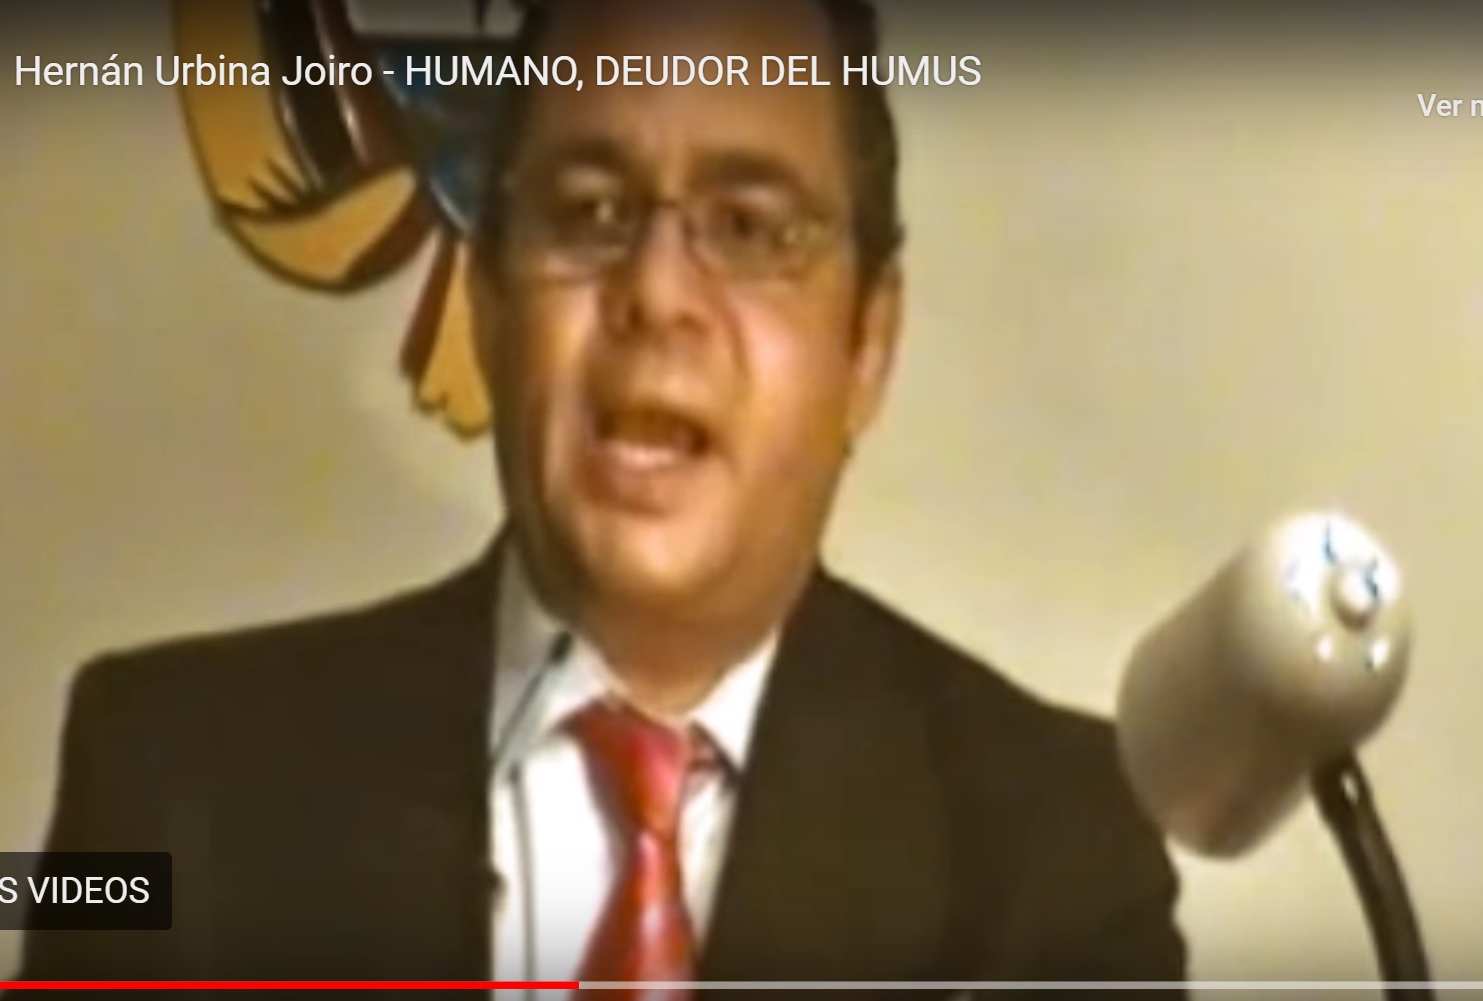 Humano, deudor del humus | Hernán Urbina Joiro en "Humanidad Ahora"